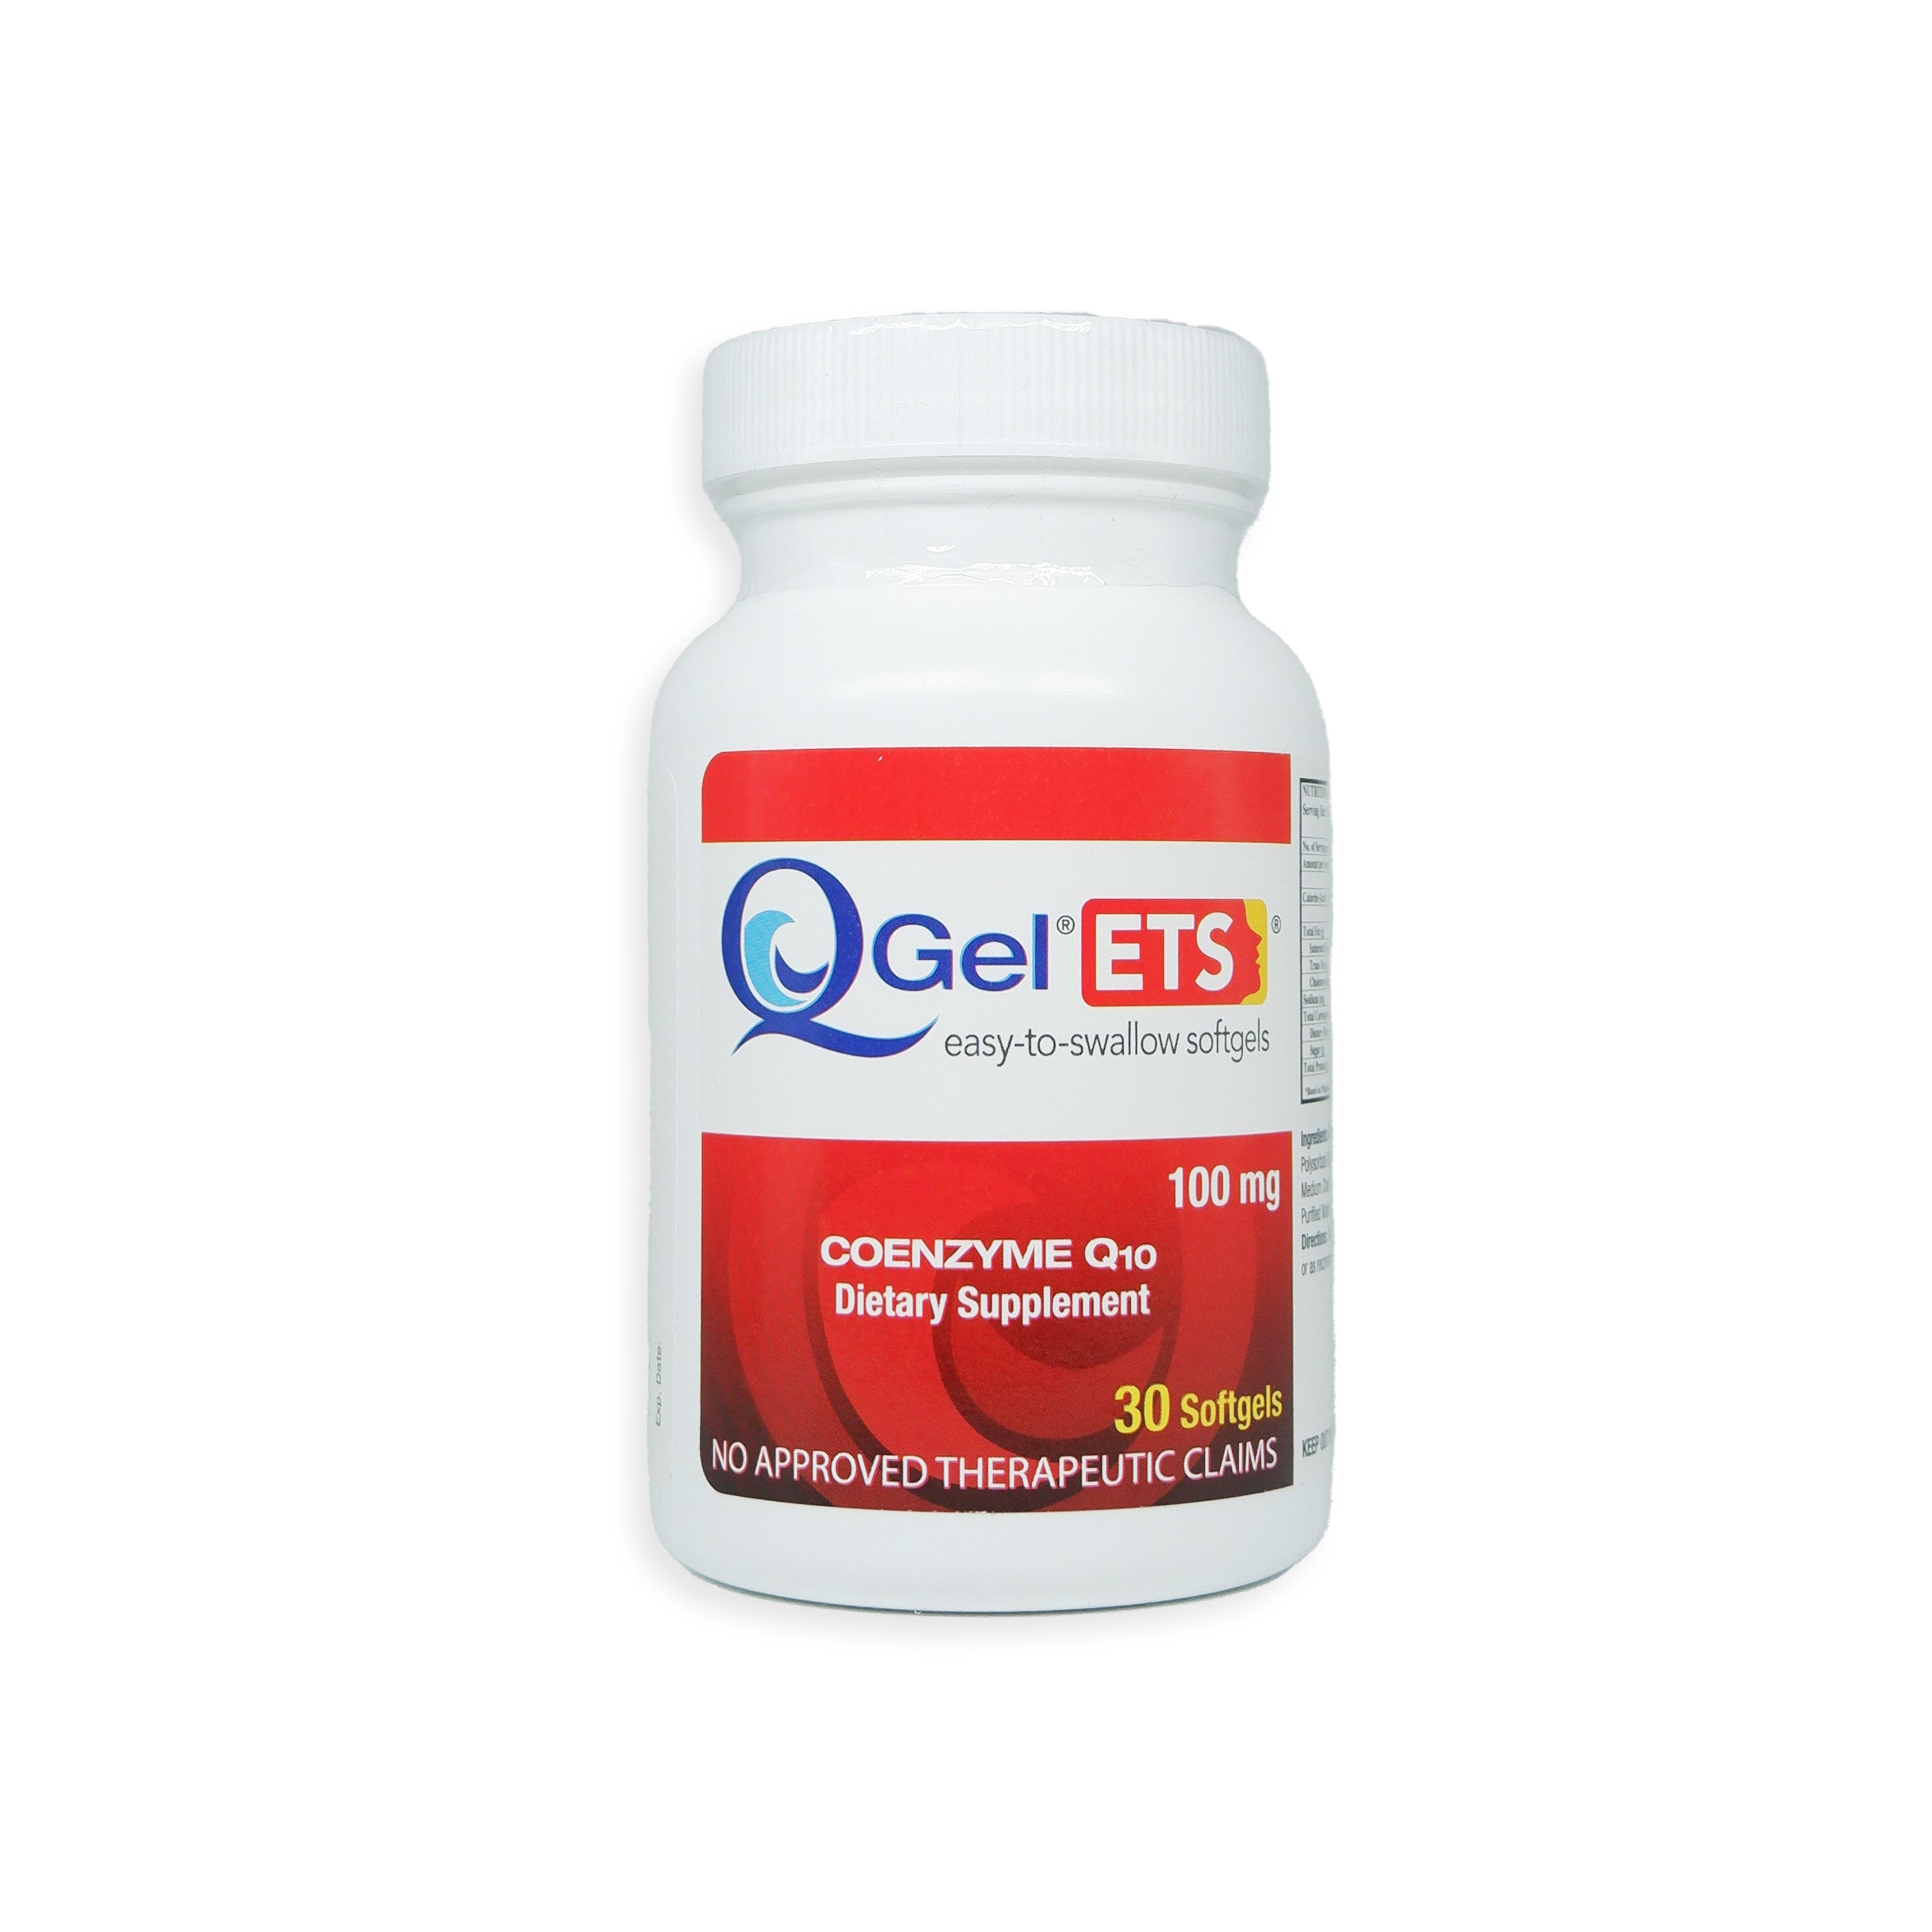 Q-Gel ETS Coenzyme Q-10 30 Softgels